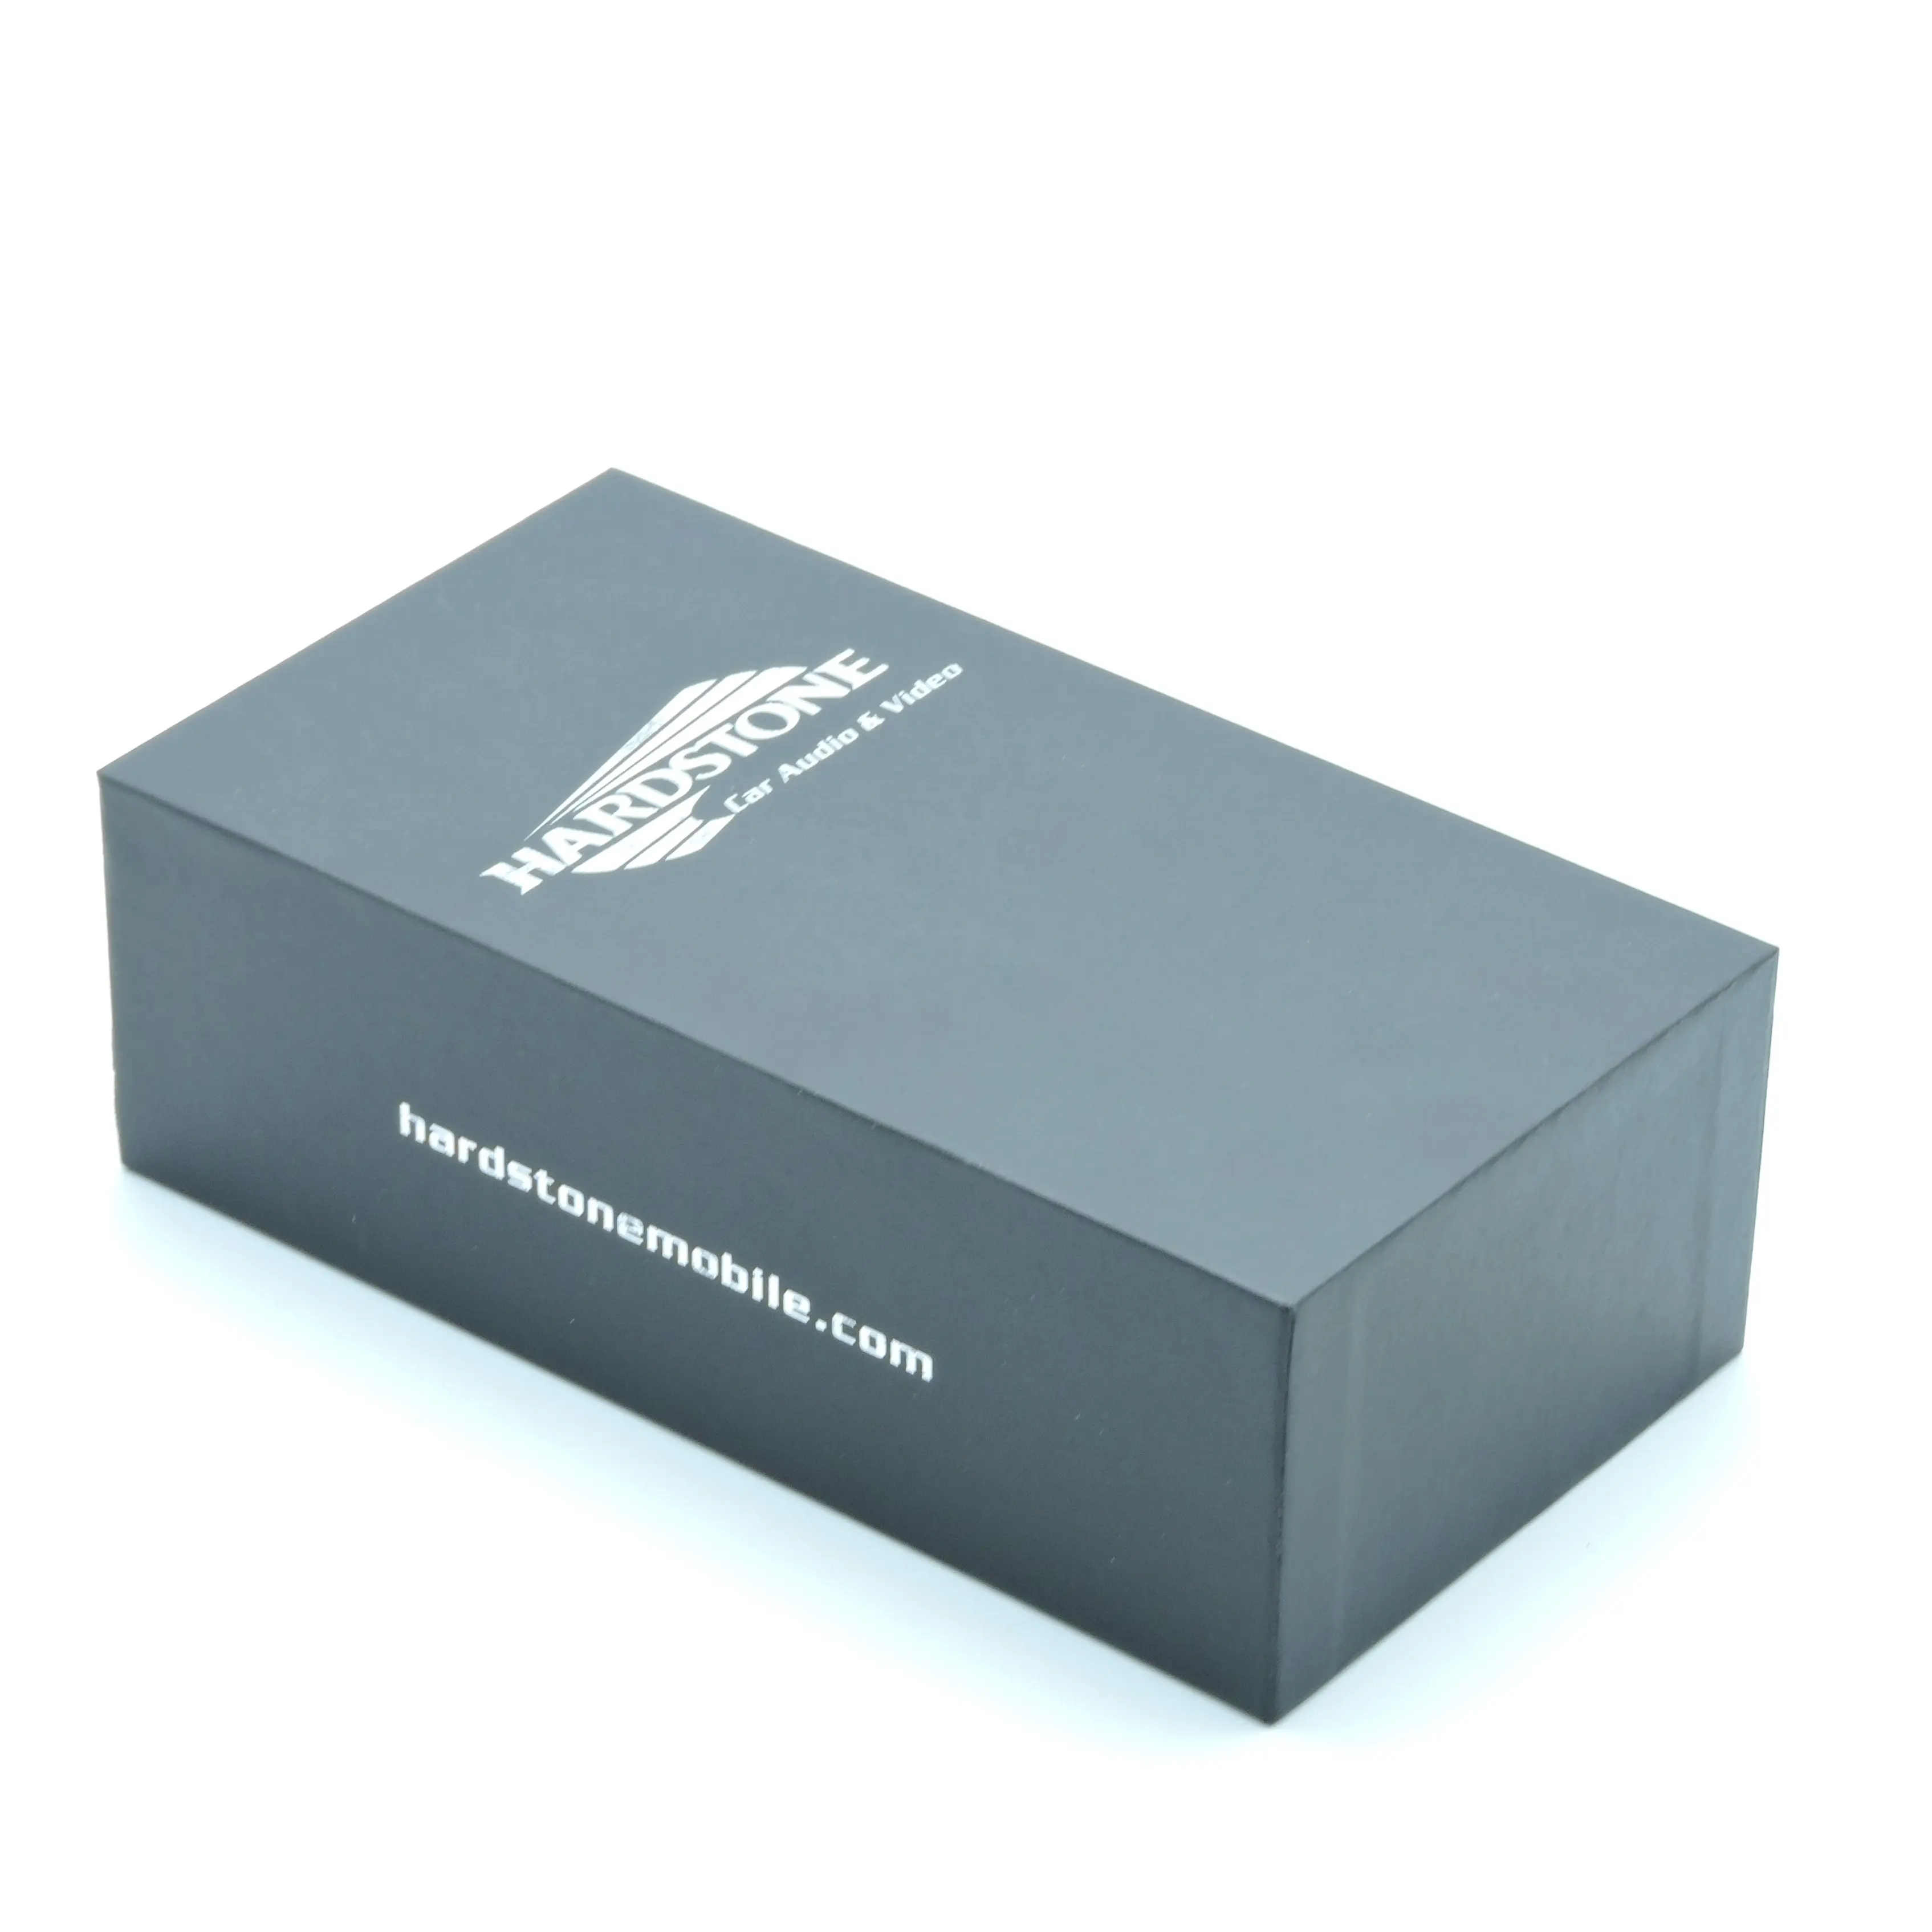 Özelleştirme boş sert kapaklı kutu siyah hediye kutusu ambalaj araba navigasyon için ucuz 2 parça kağit kutu